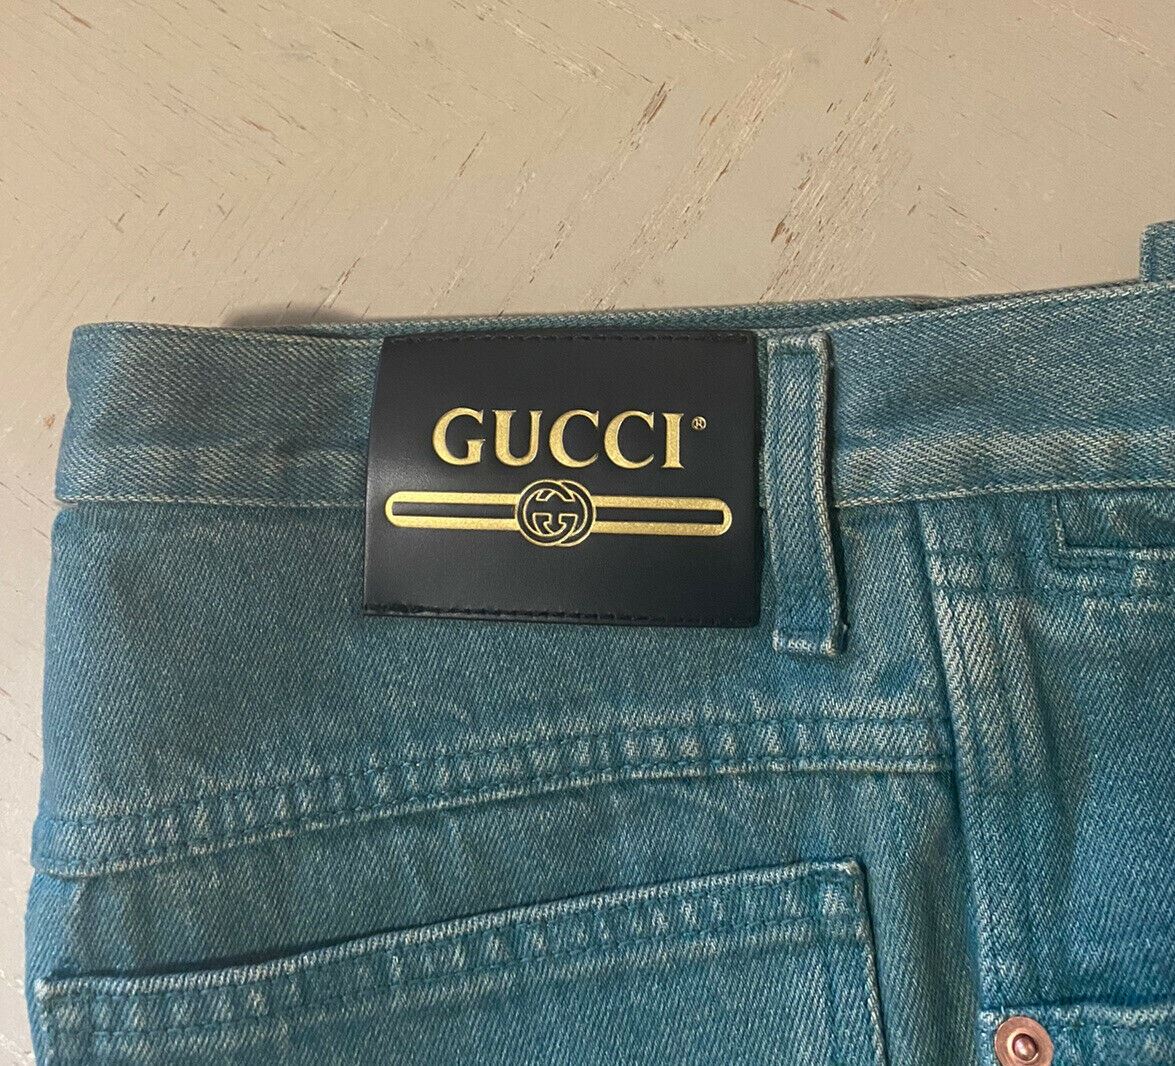 Neu mit Etikett: 1450 $ Gucci Herren-Jeanshose, Grün, Größe 30 US